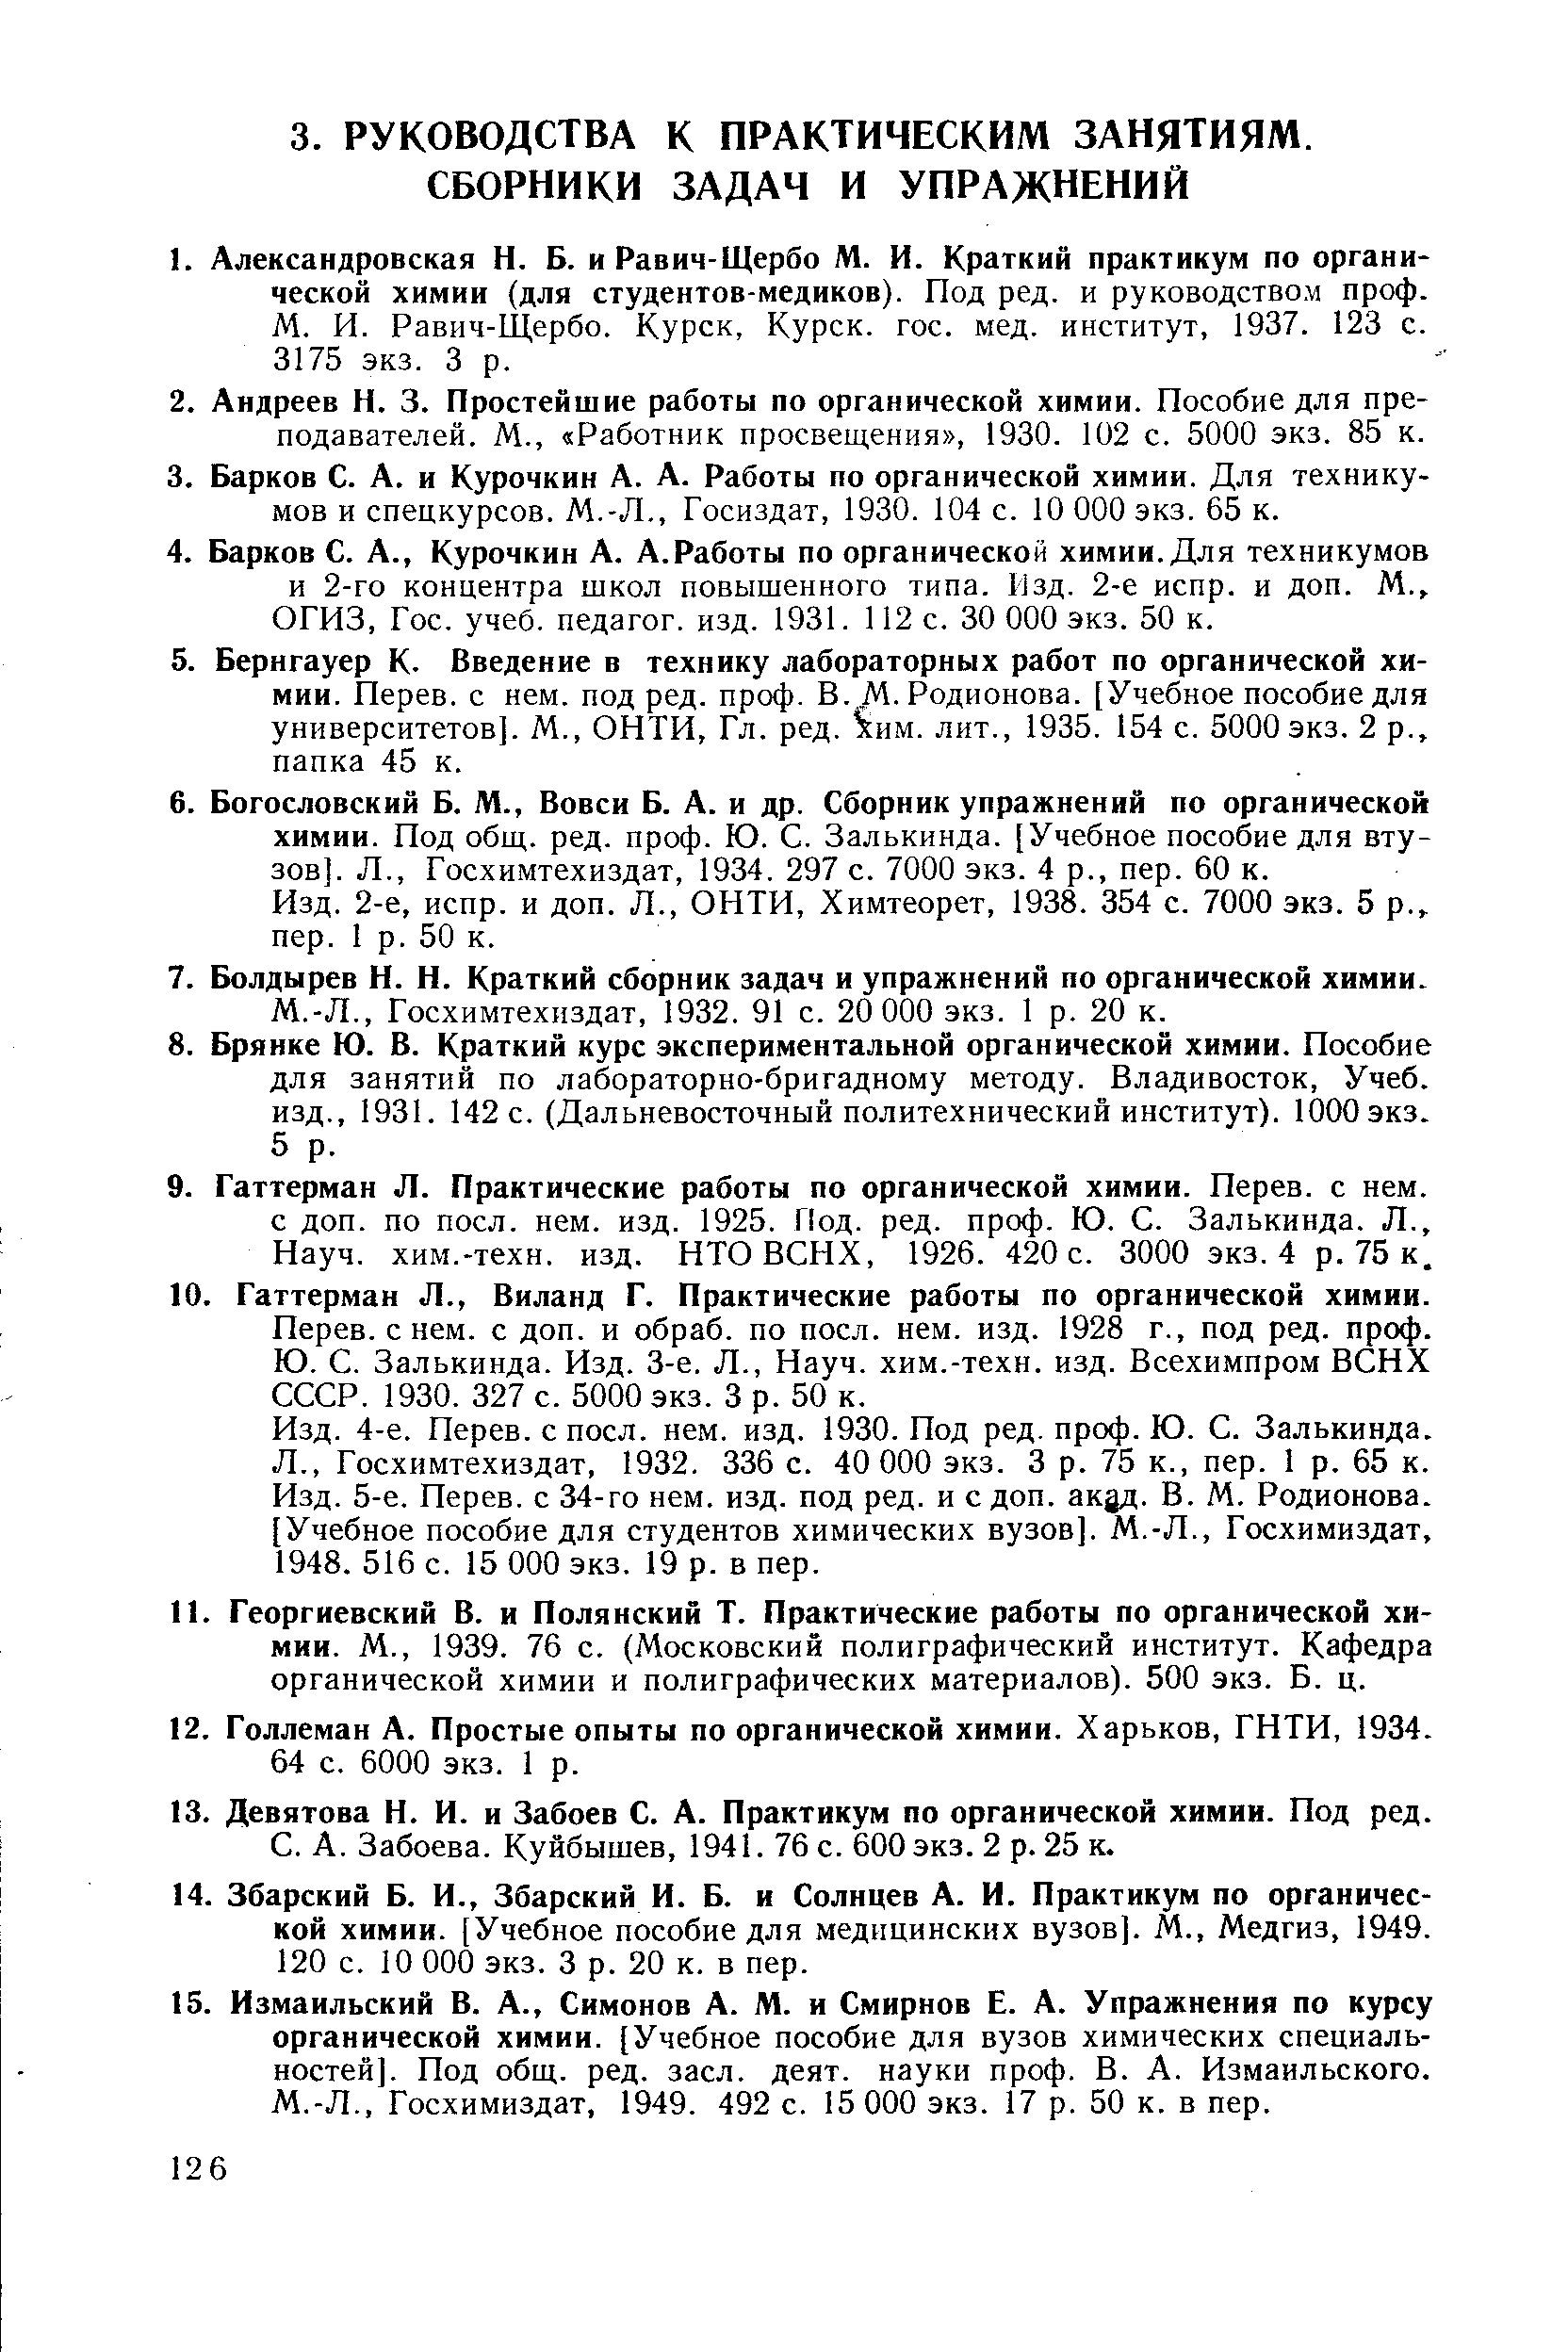 Химтеорет, 1938. 354 с. 7000 экз. 5 р. пер. 1 р. 50 к.